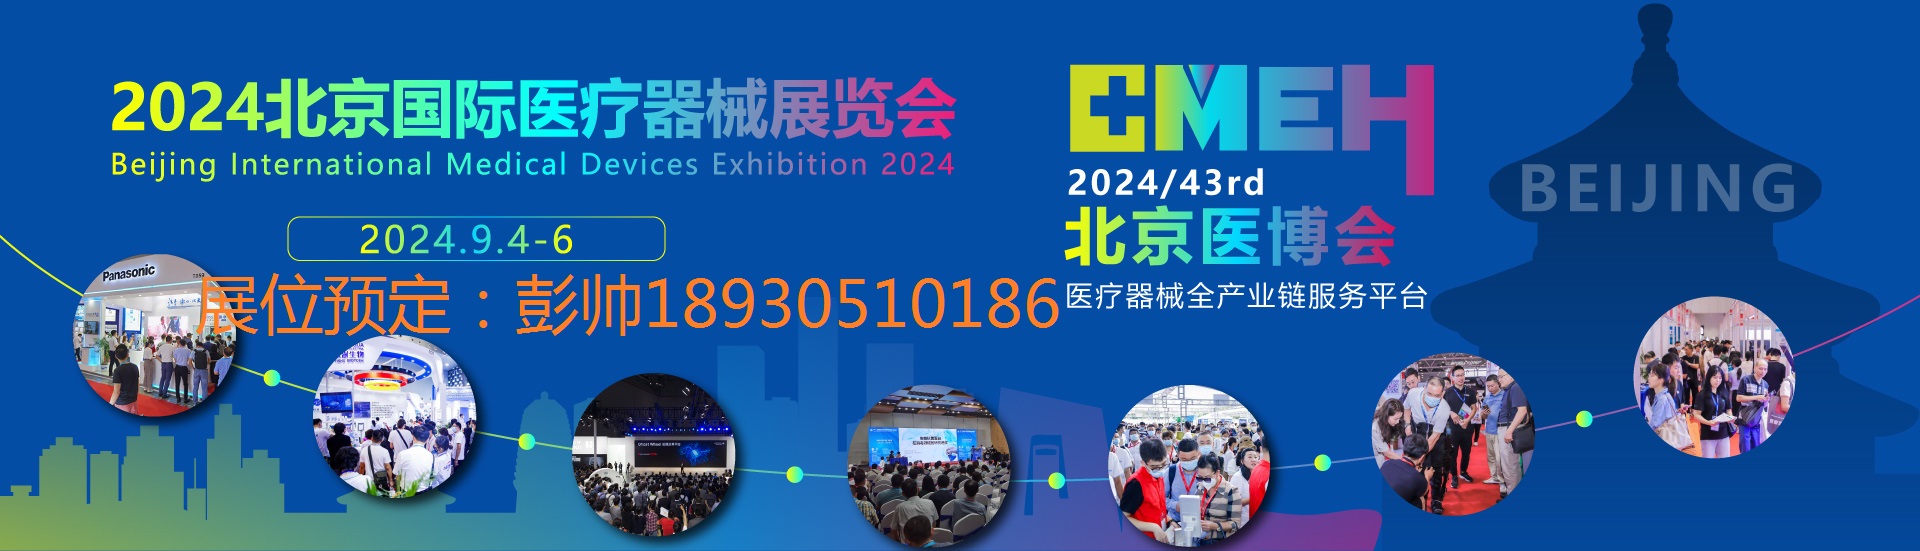 2024北京国际医疗器械展览会9月4日-6日举行